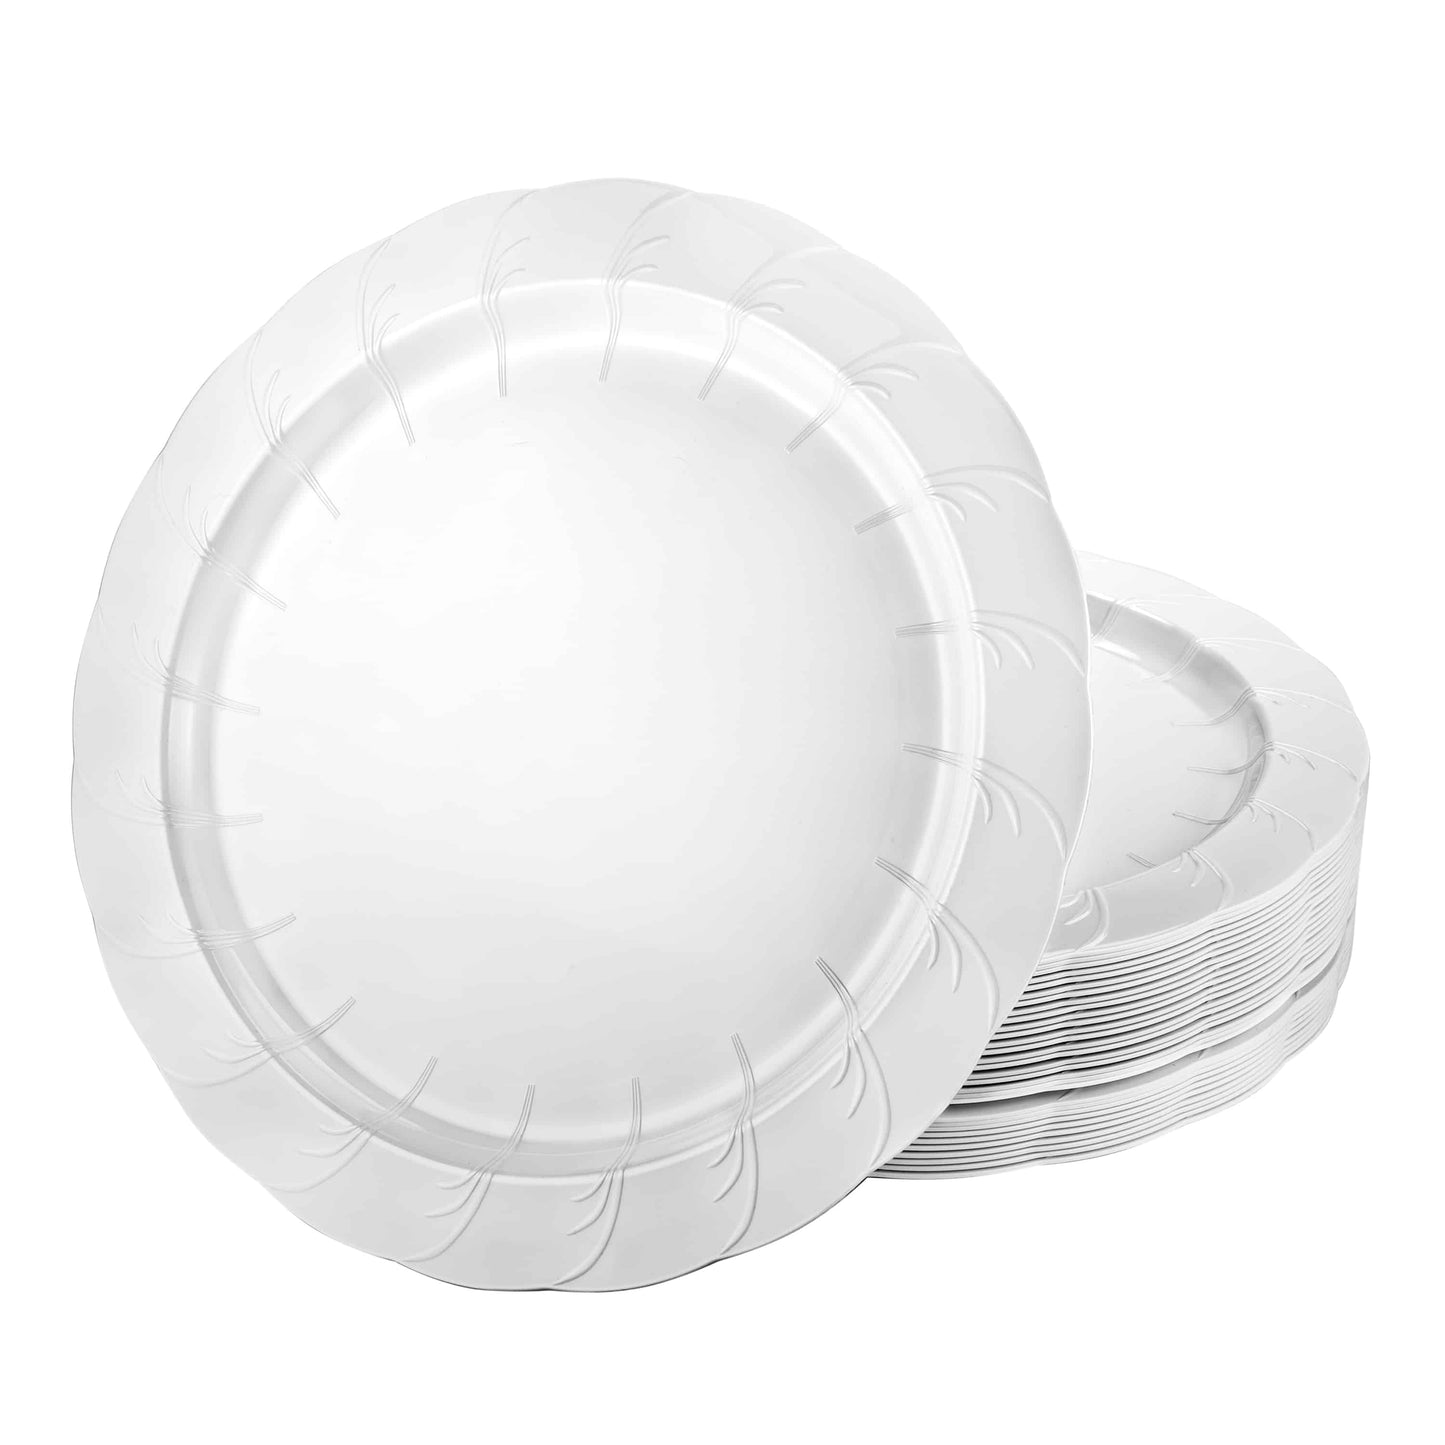 Elegance Premium Plastic Round Dinner Plates